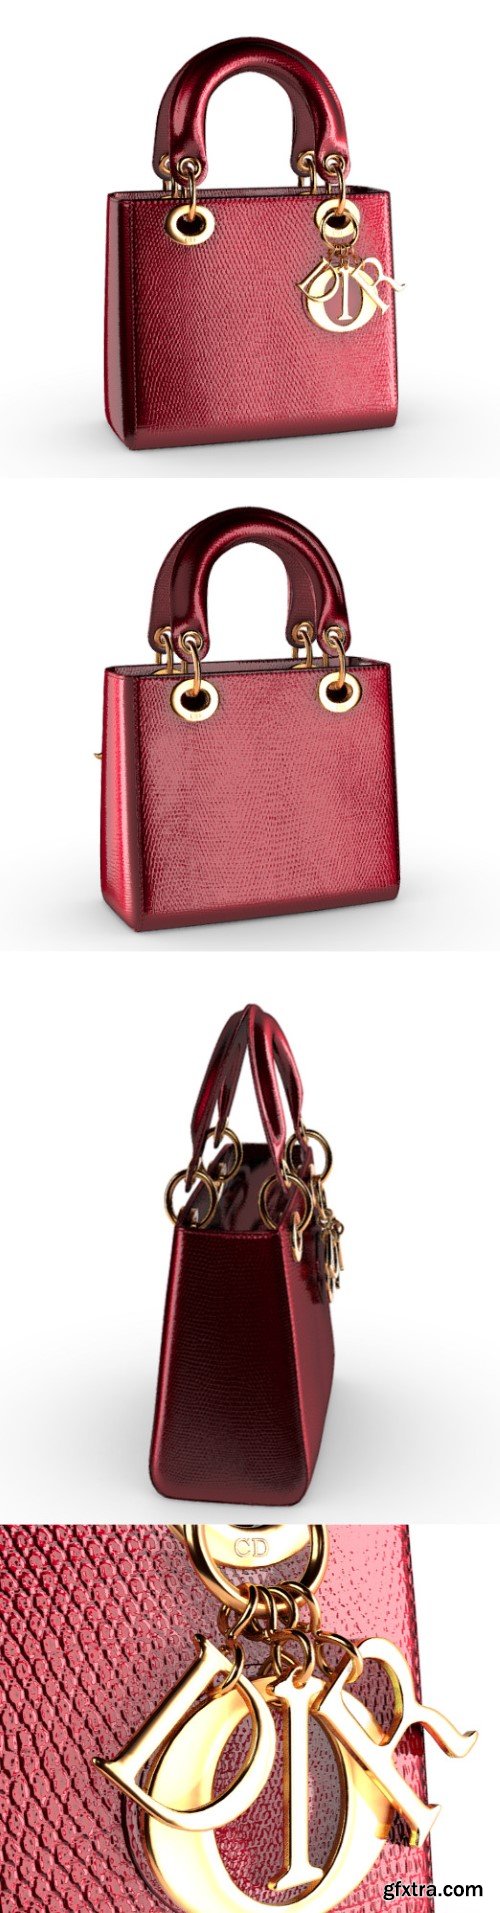 Dior handbag 3d model